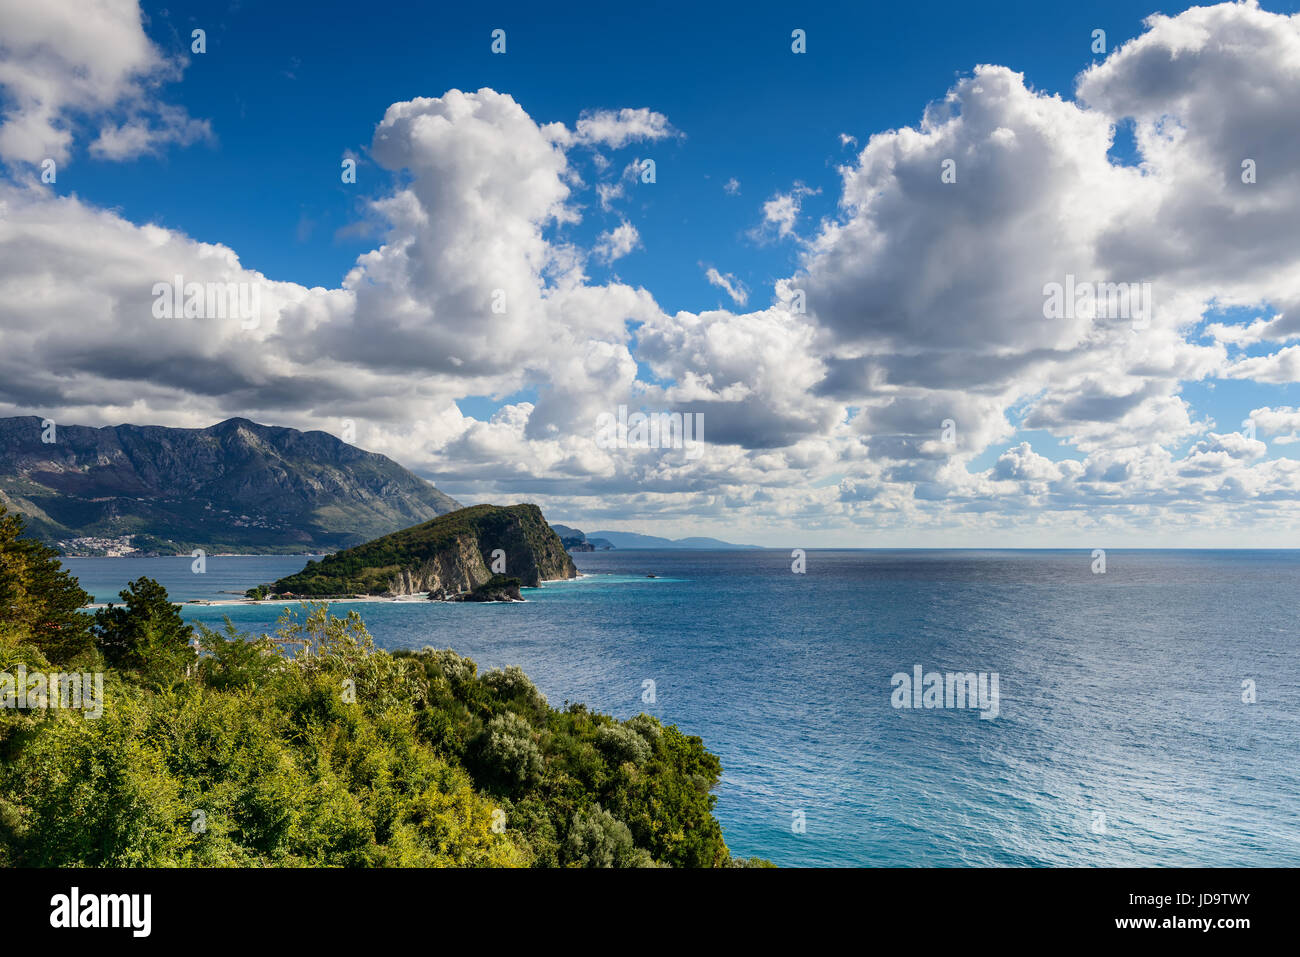 Panorama-Landschaft der Riviera von Budva in Montenegro. Fantastische Aussicht auf den bewölkten Himmel. Dramatische Morgen Szene. Balkan, Adria, Europa Stockfoto